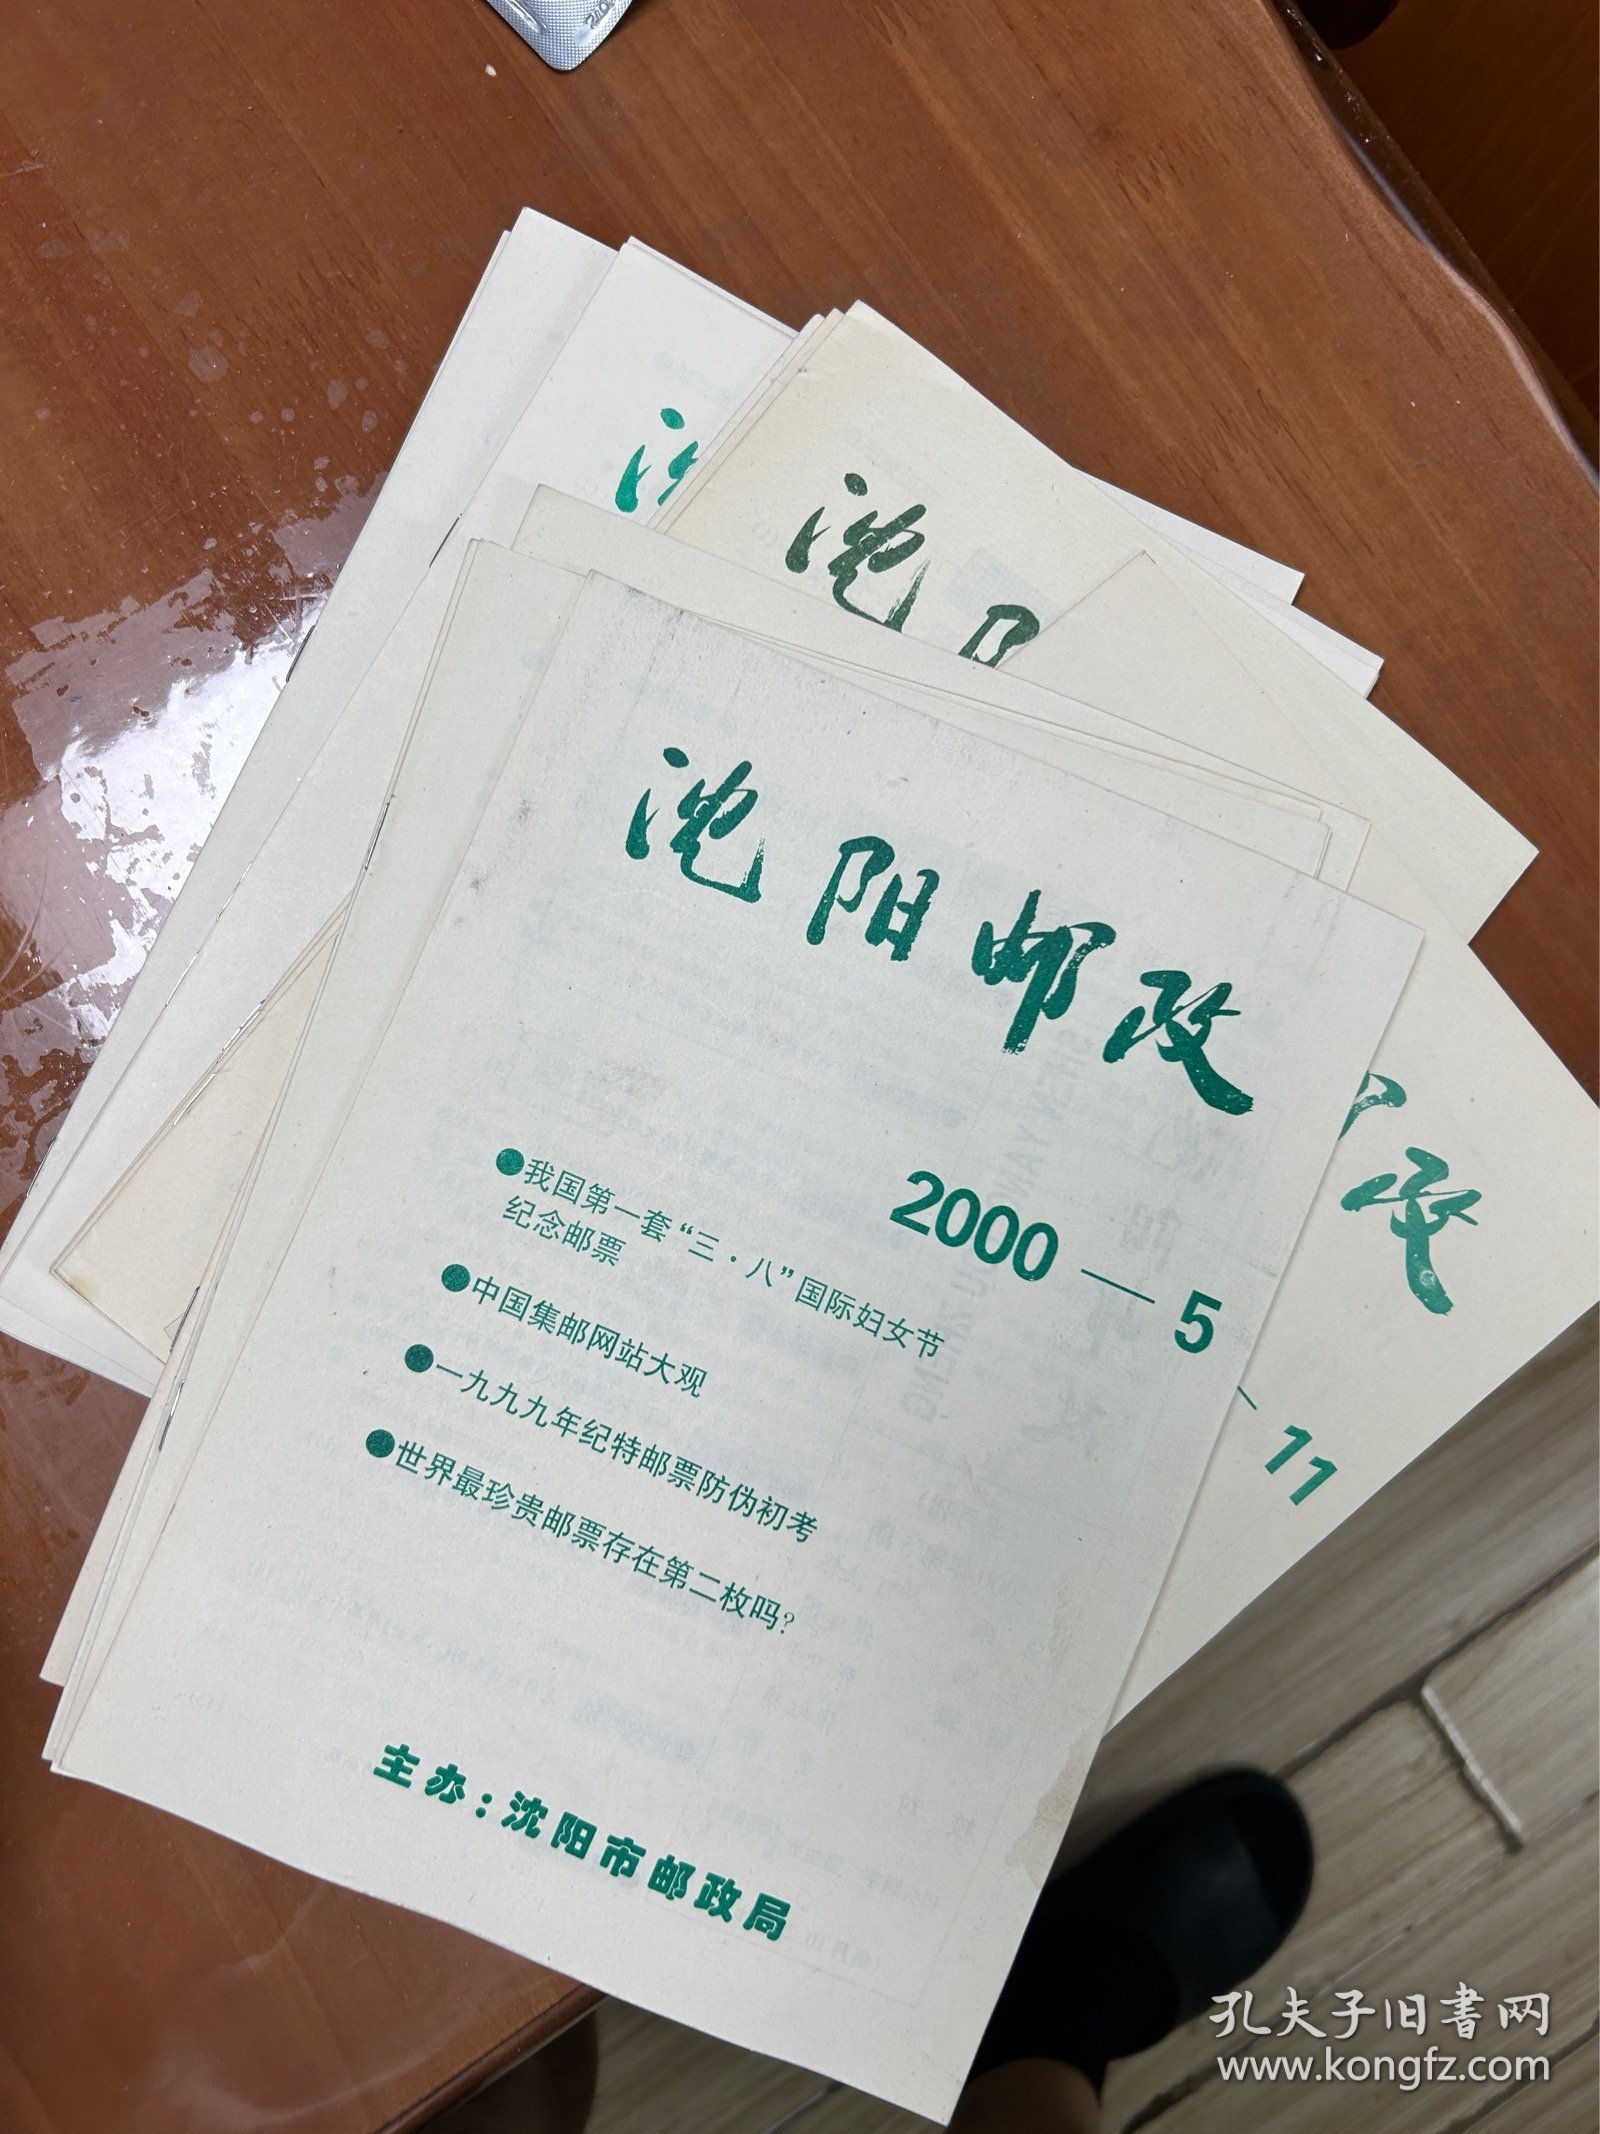 沈阳邮政
2000-2、3、4、5、6、7、9、10、11、12、13、14、15、16、17
（缺8）